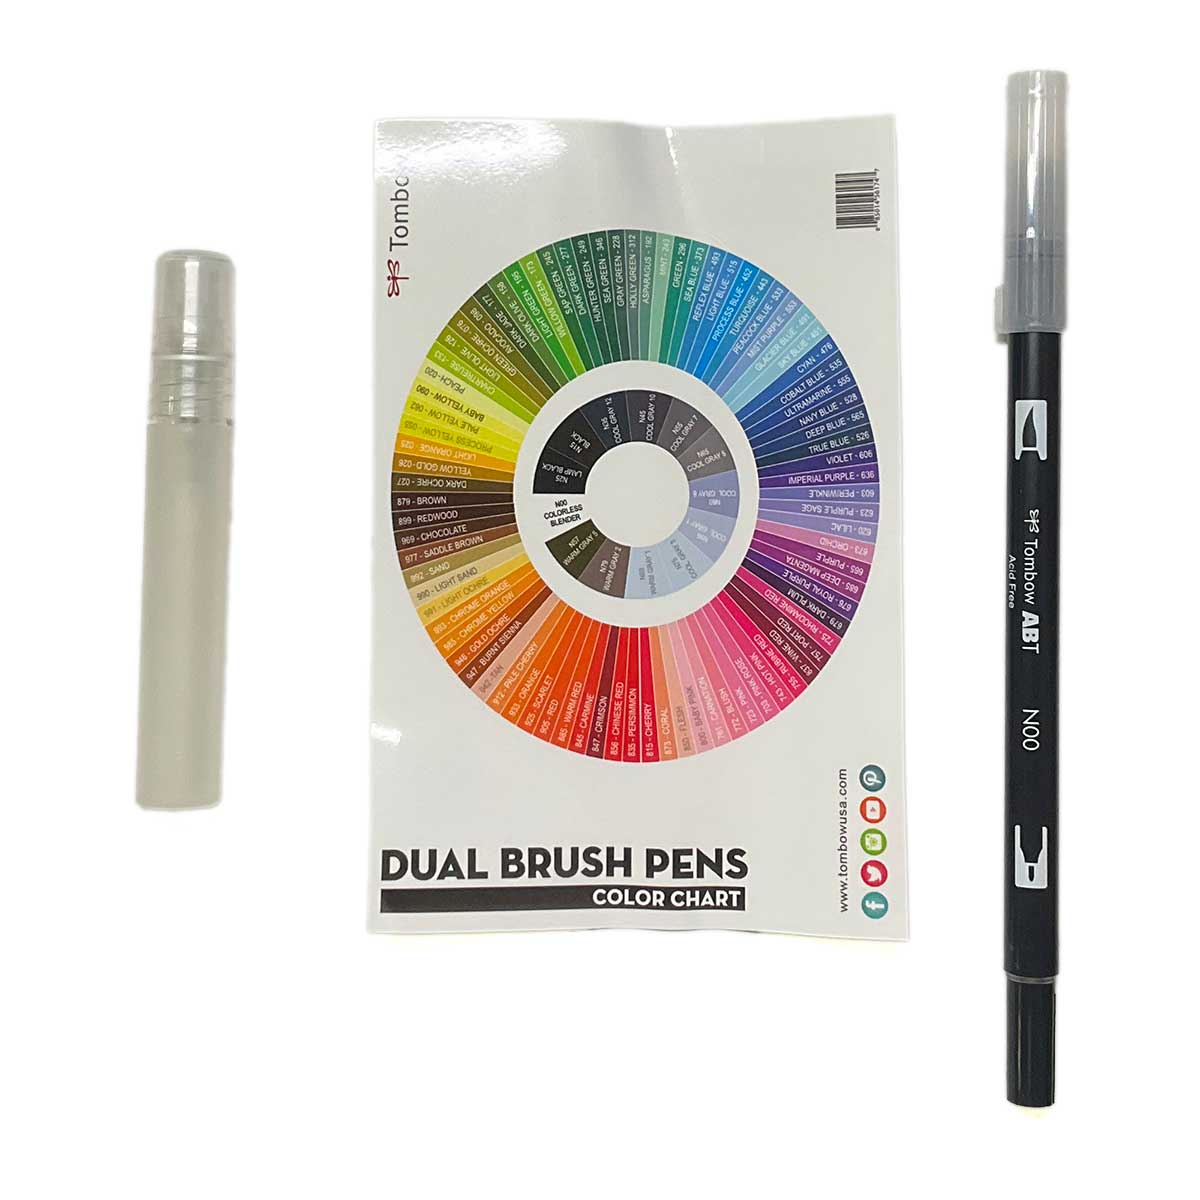 Tombow Blending Kit For Blending Dual Brush Pens